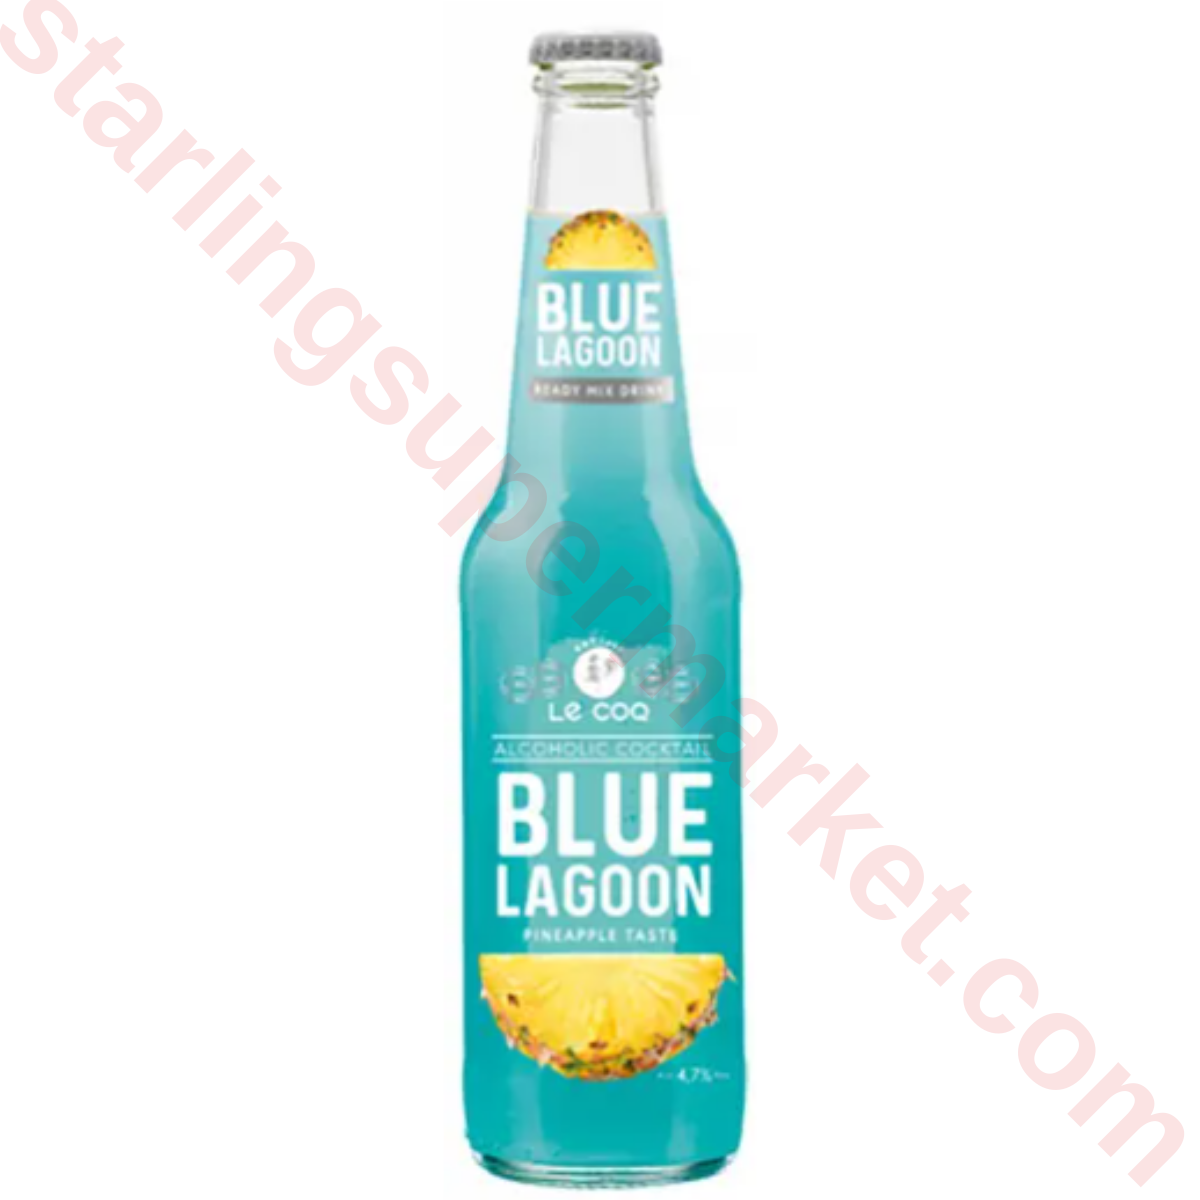 LE COQ BLUE LAGOON 4,7% COCKTAIL 330 ML